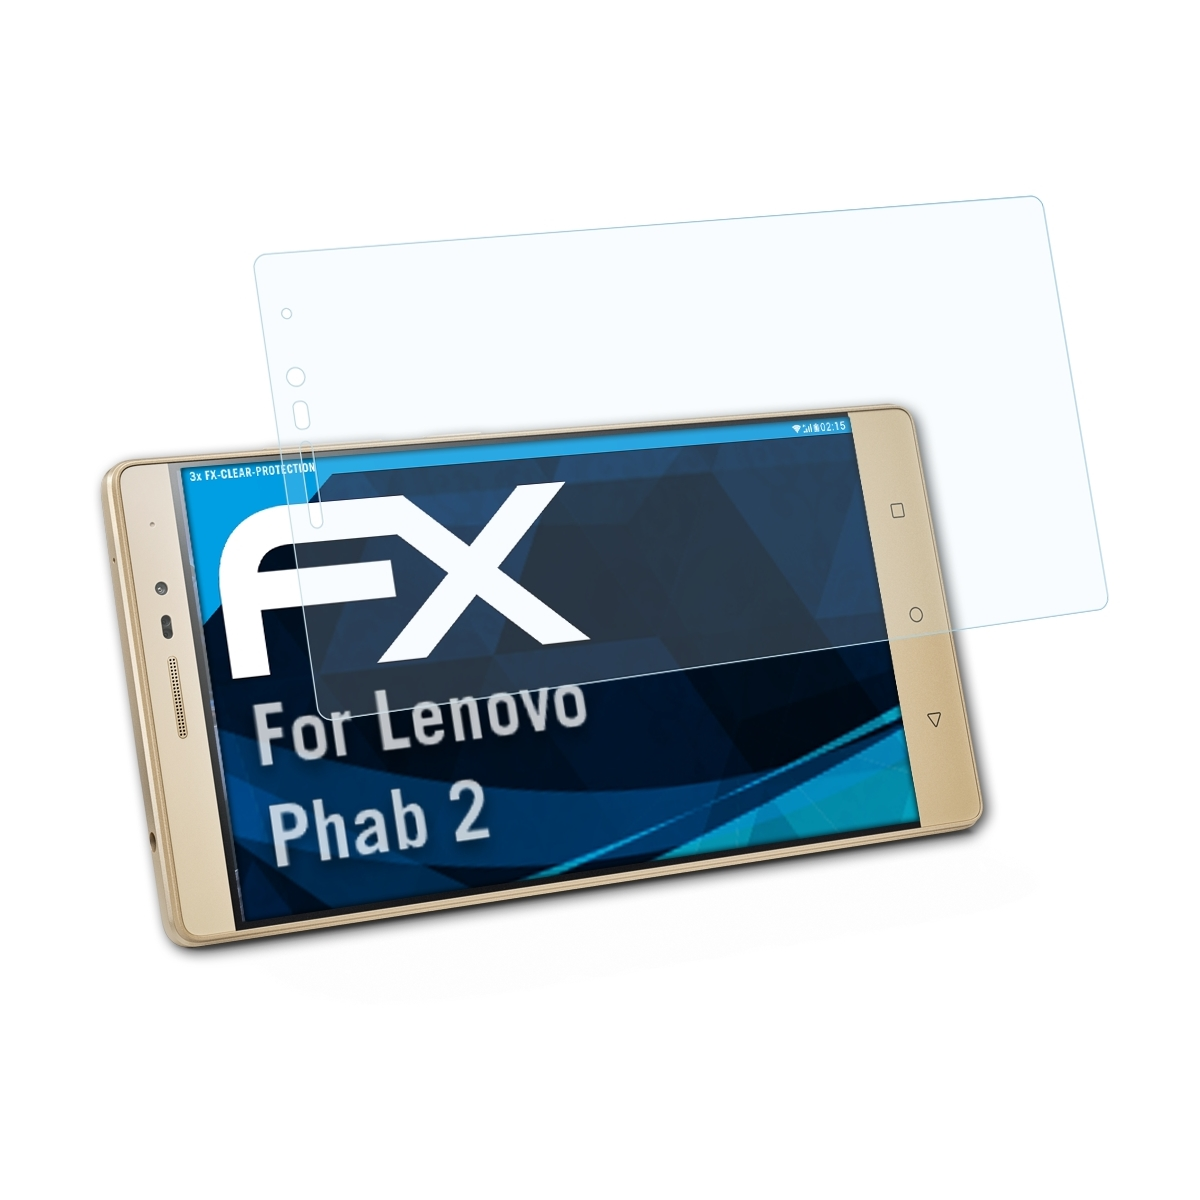 ATFOLIX 3x FX-Clear Phab 2) Lenovo Displayschutz(für